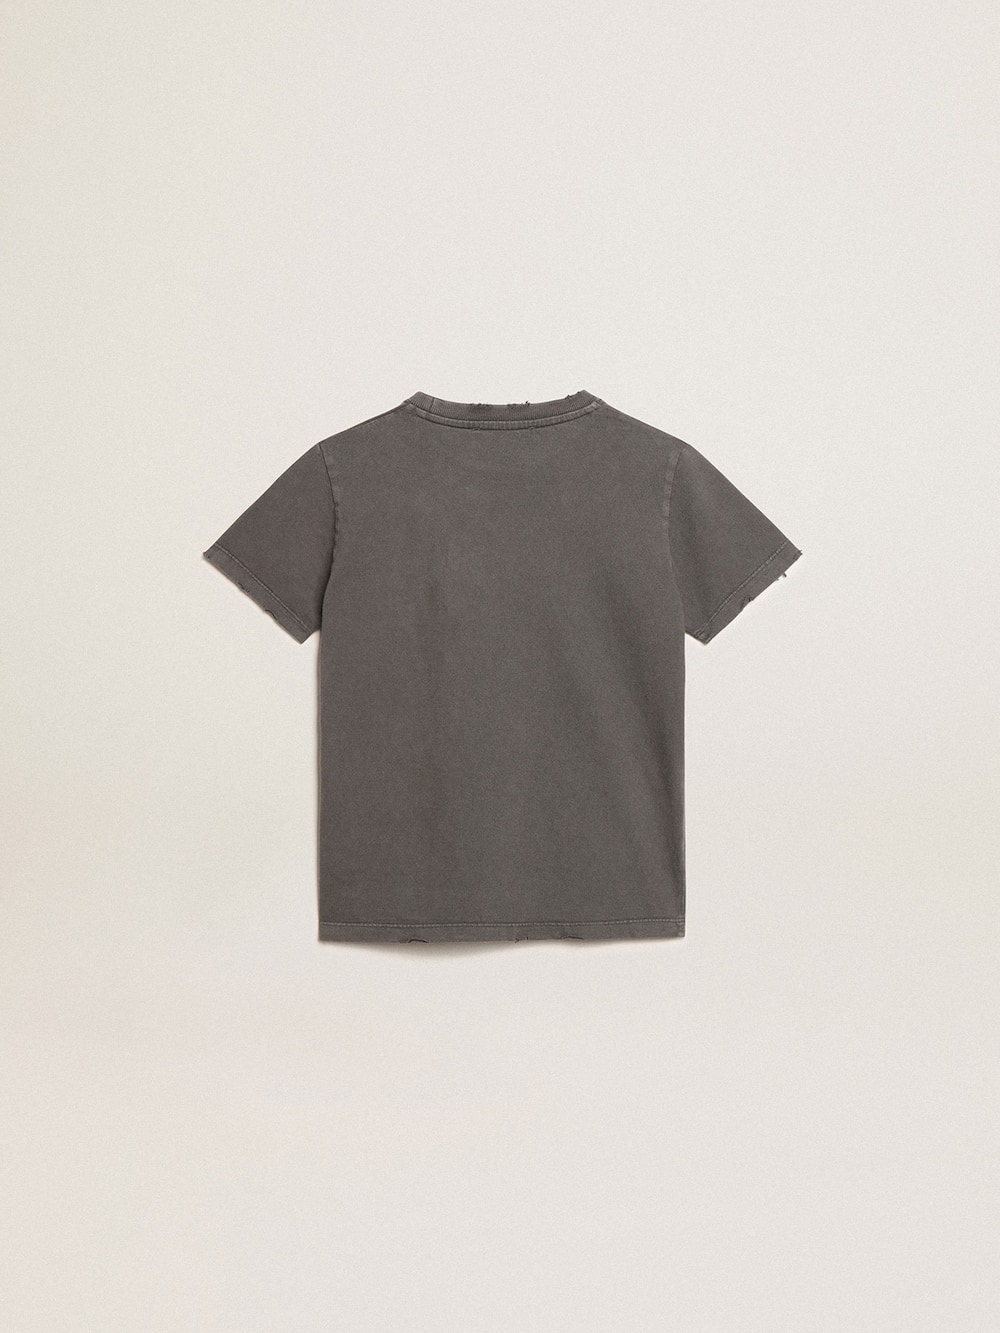 Golden Goose - T-shirt di colore grigio da bambino dal trattamento distressed in 